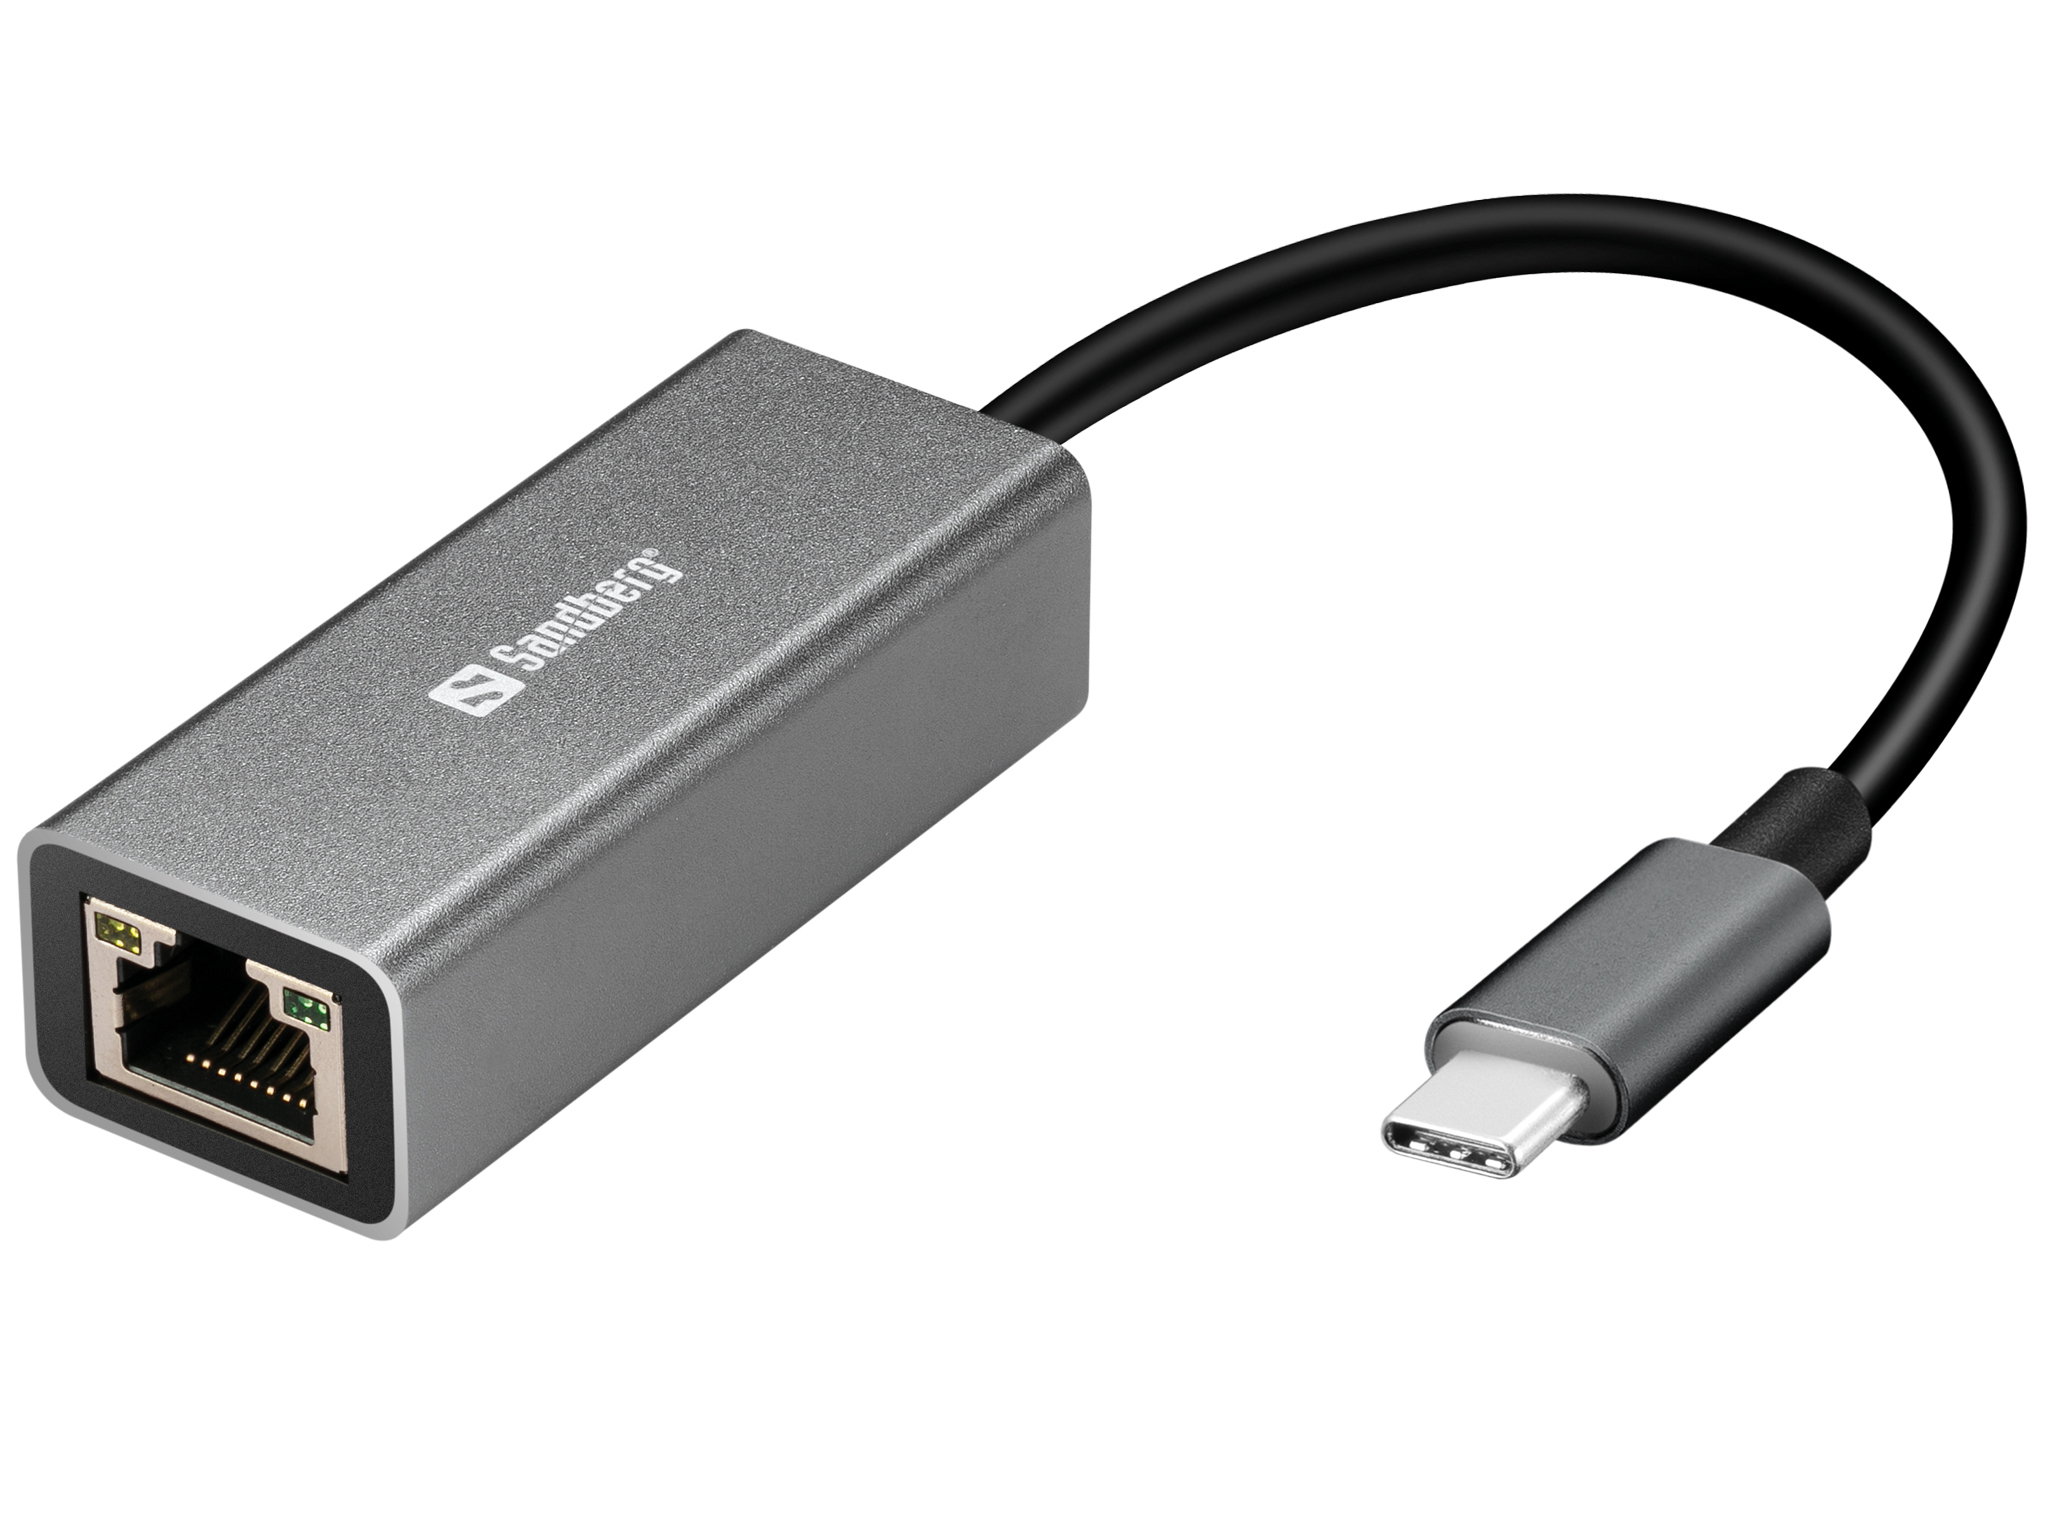 SANDBERG USB-C to Network Converter - Netzwerkadapter